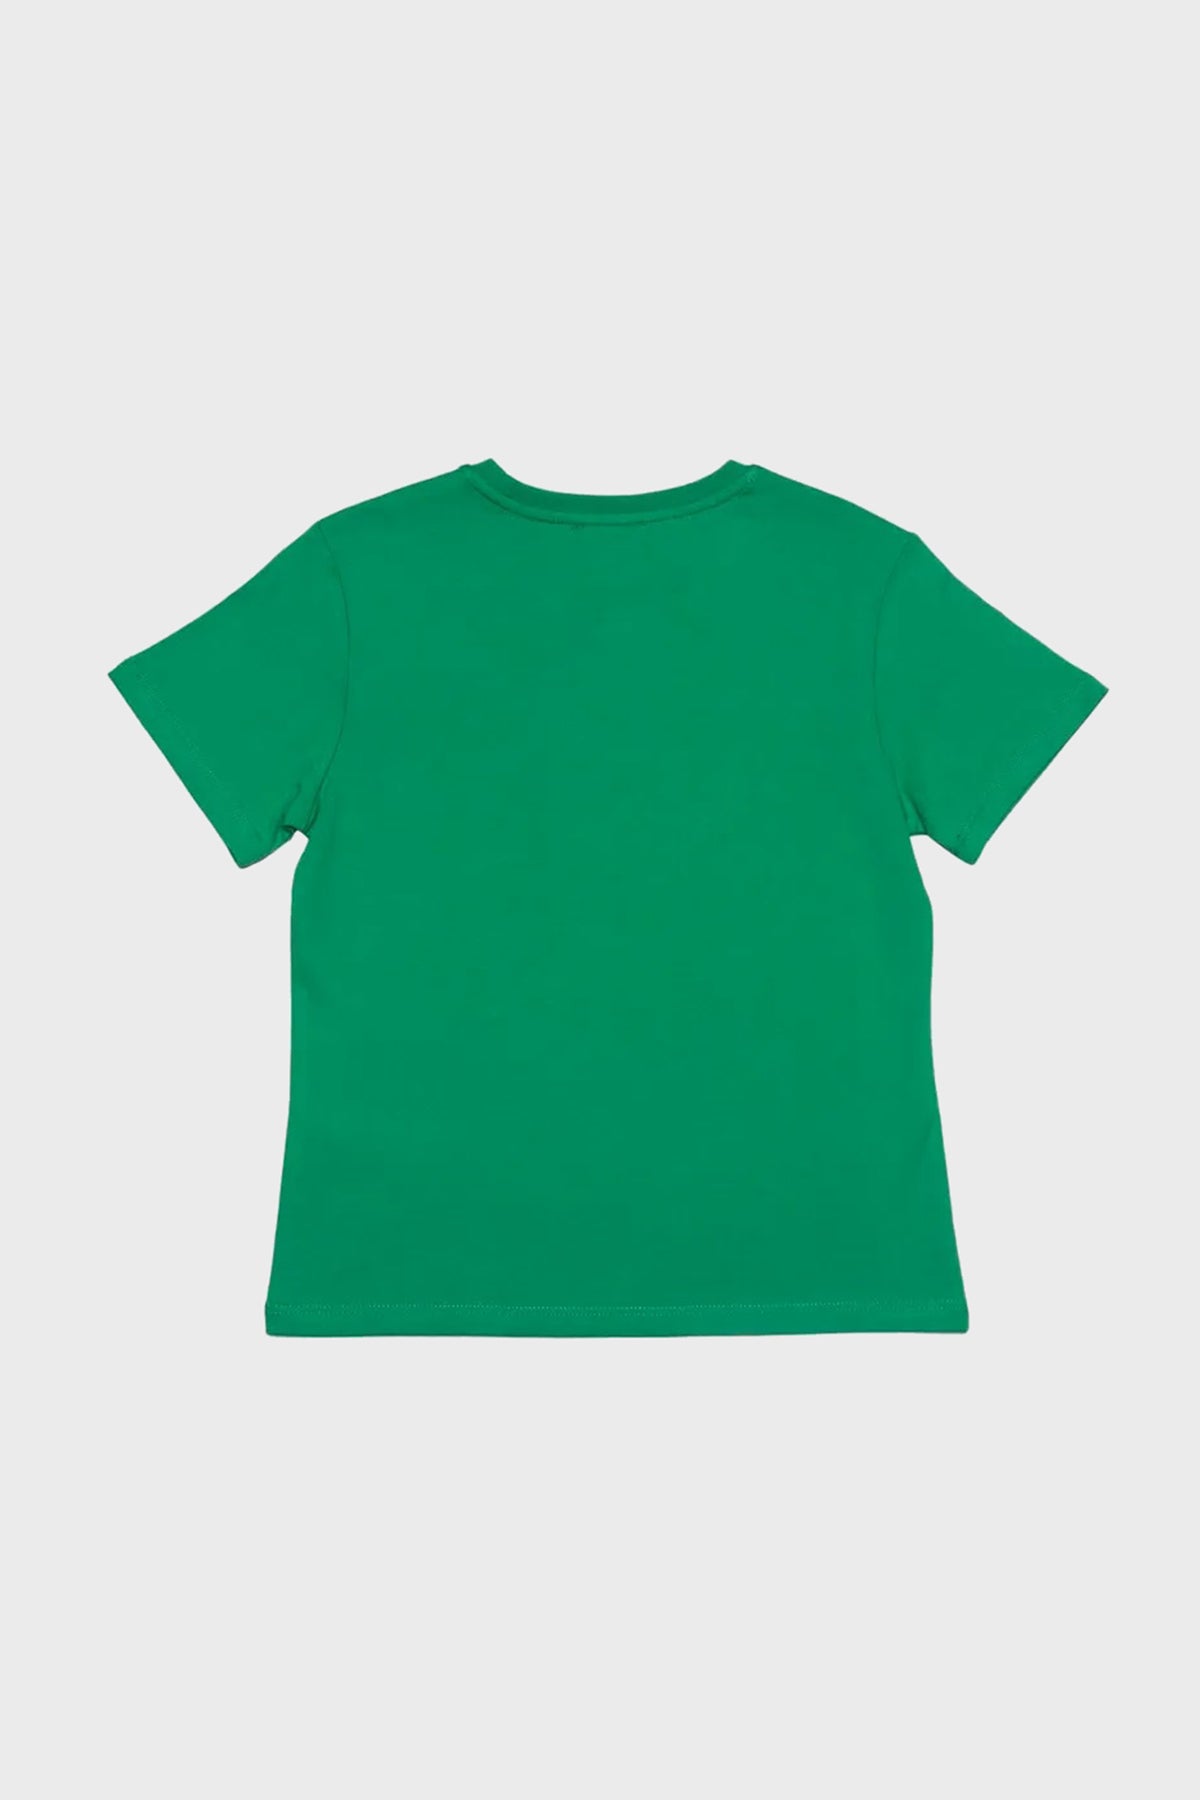 United Colors Of Benetton Baskılı Bisiklet Yaka Kız Çocuk T Shirt BNTG20498 YEŞİL